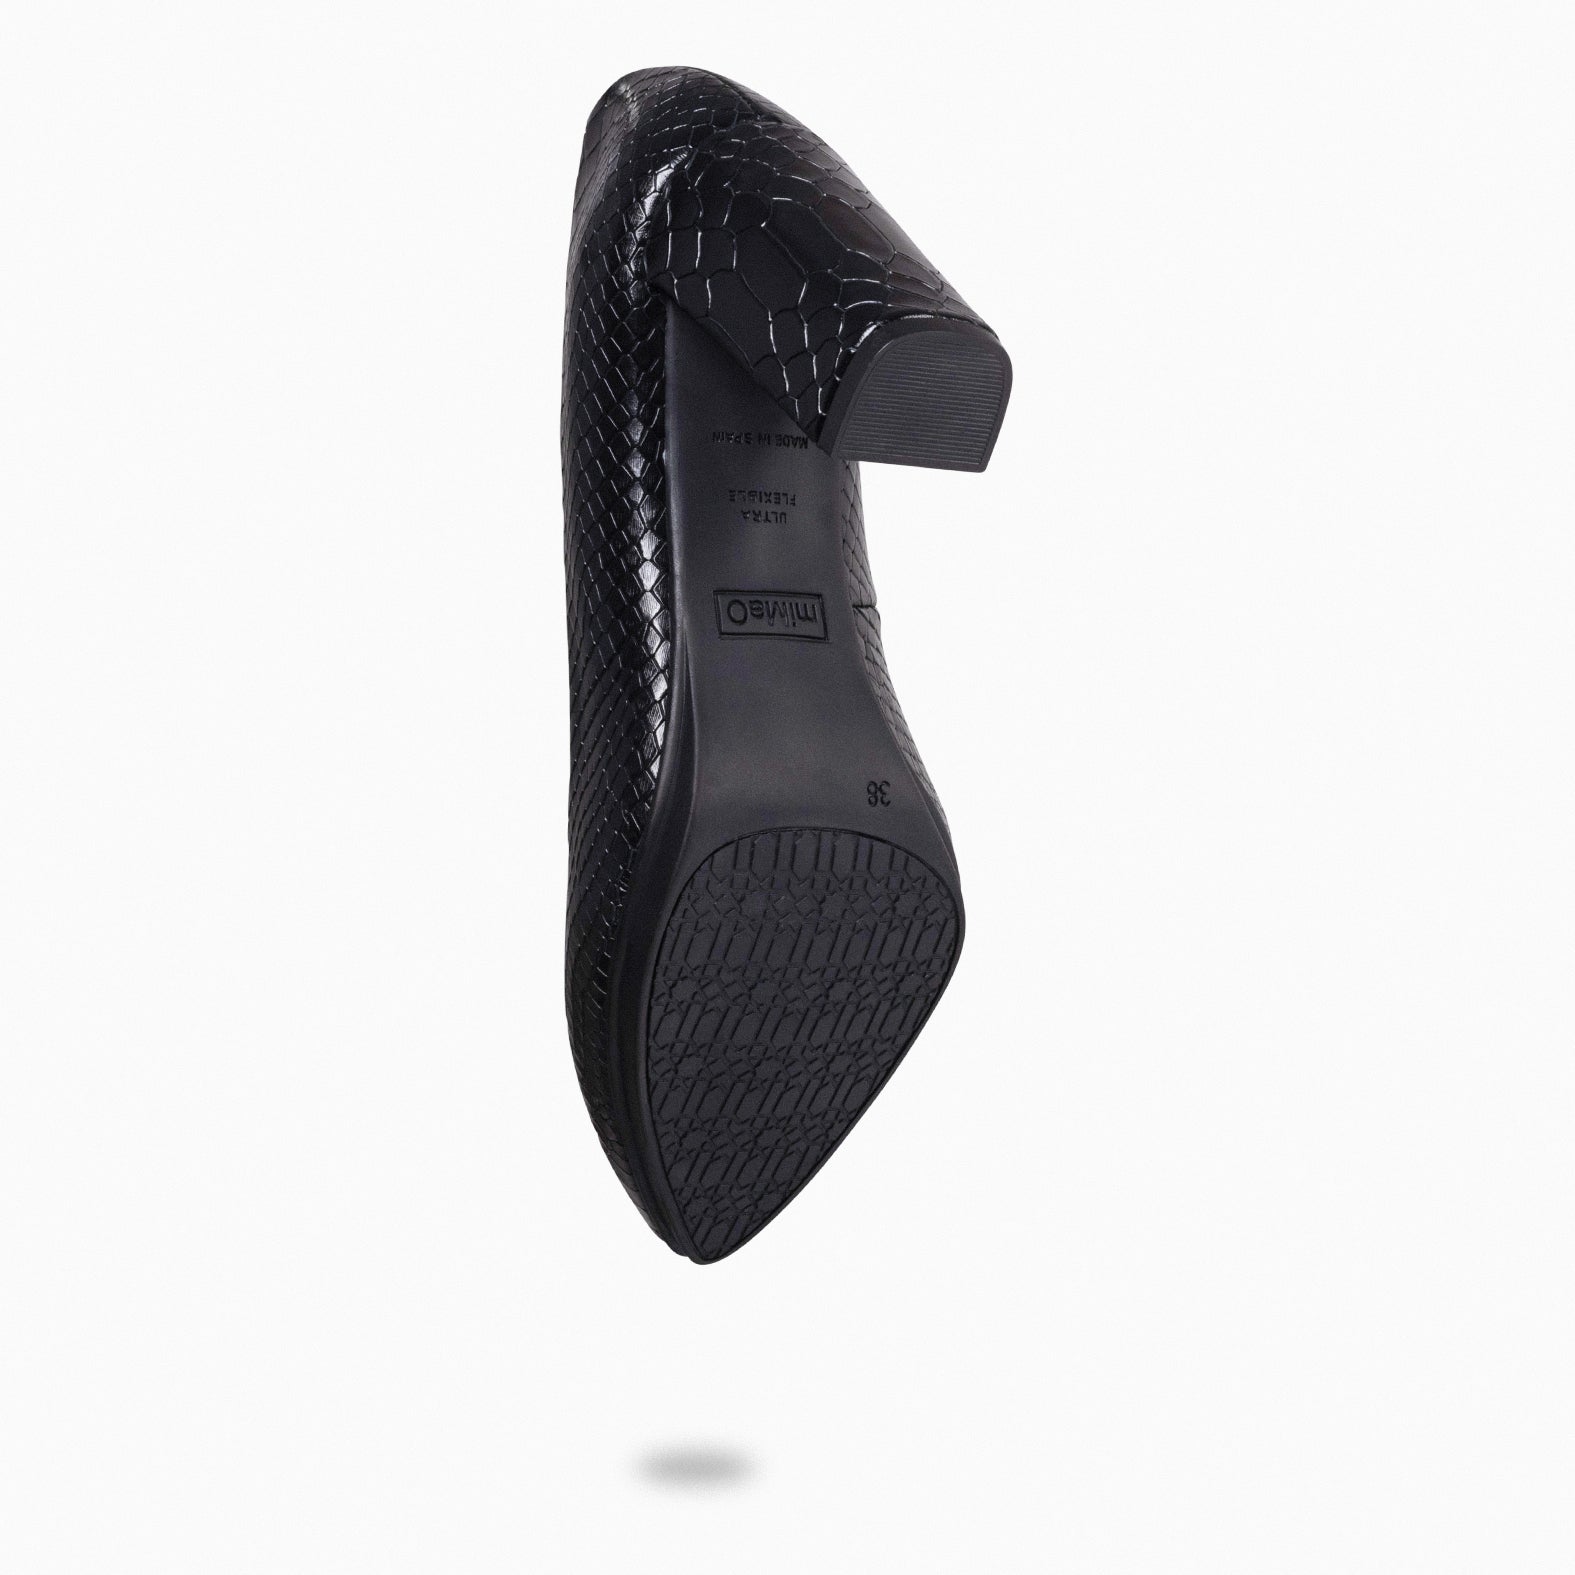 URBAN SAUVAGE - Zapatos de salón con textura de serpiente NEGRO